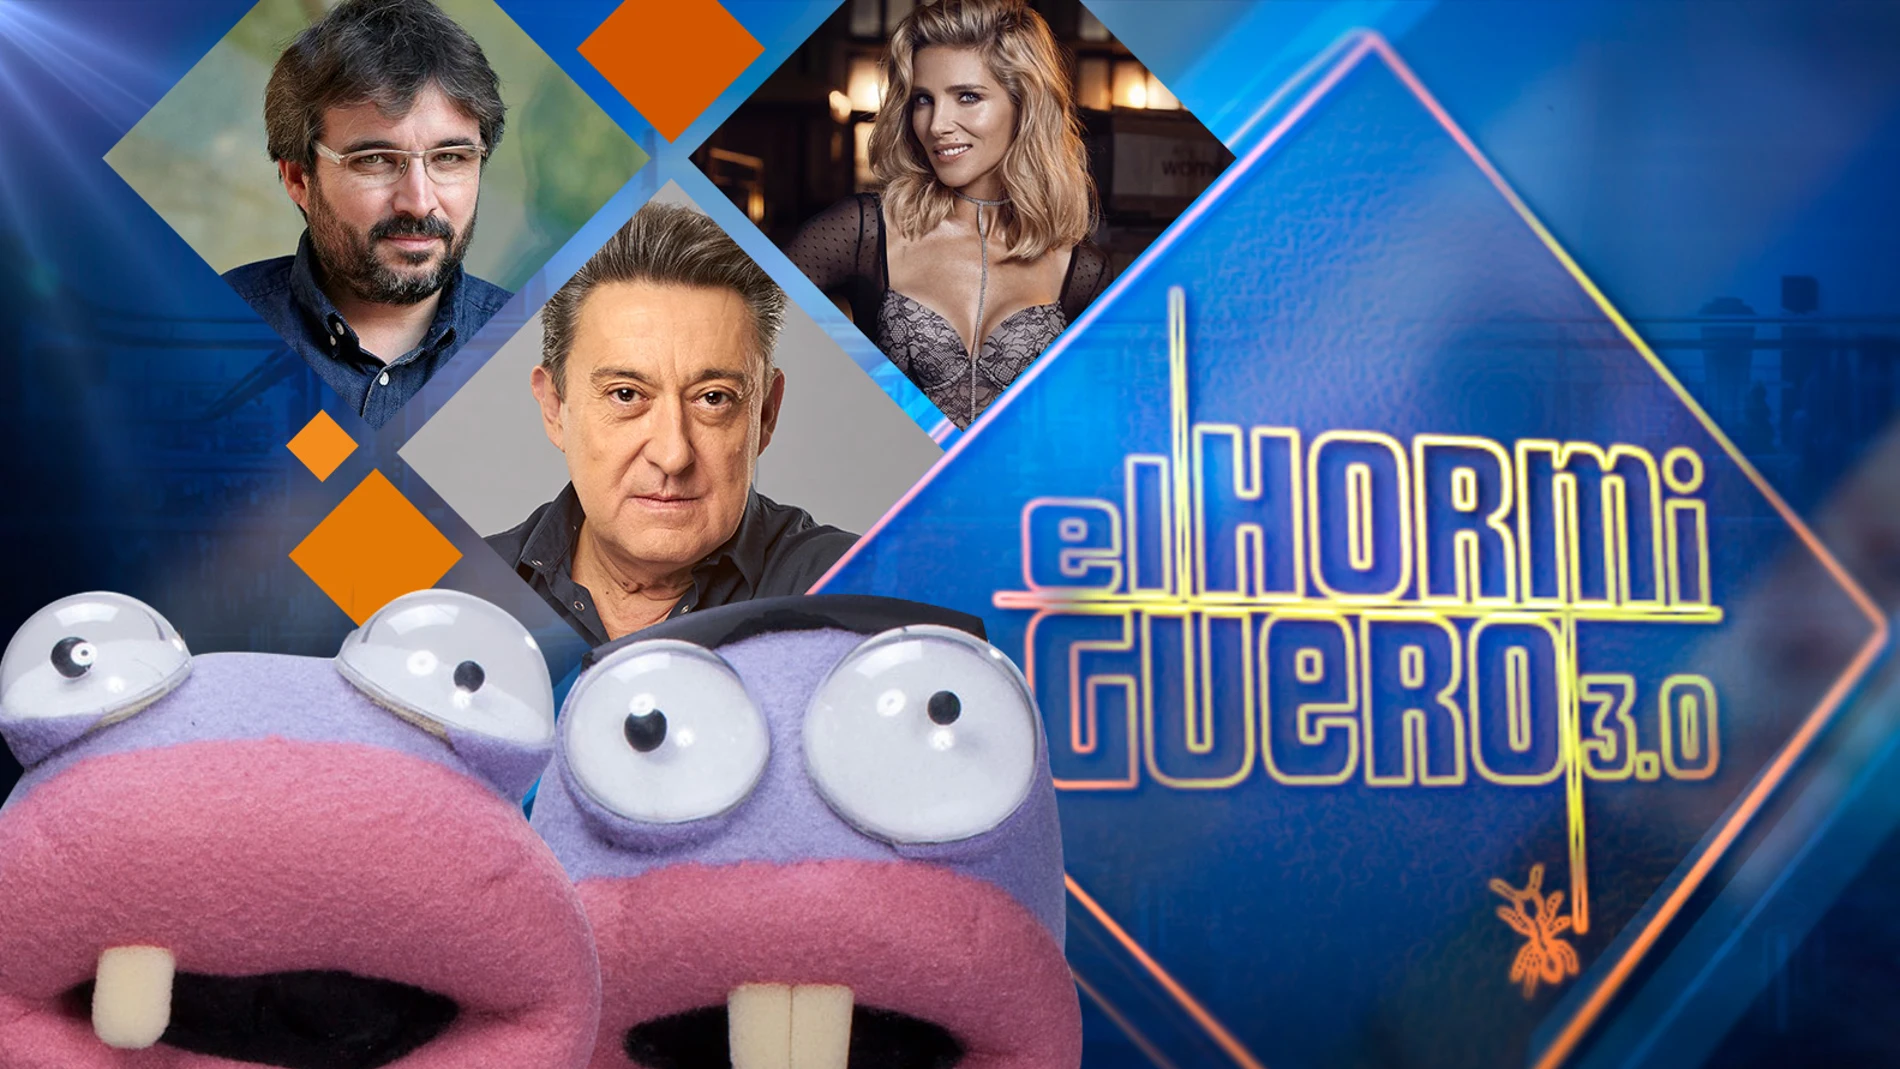 Mariano Peña, Elsa Pataky y Jordi Évole se divertirán la próxima semana en 'El Hormiguero 3.0'